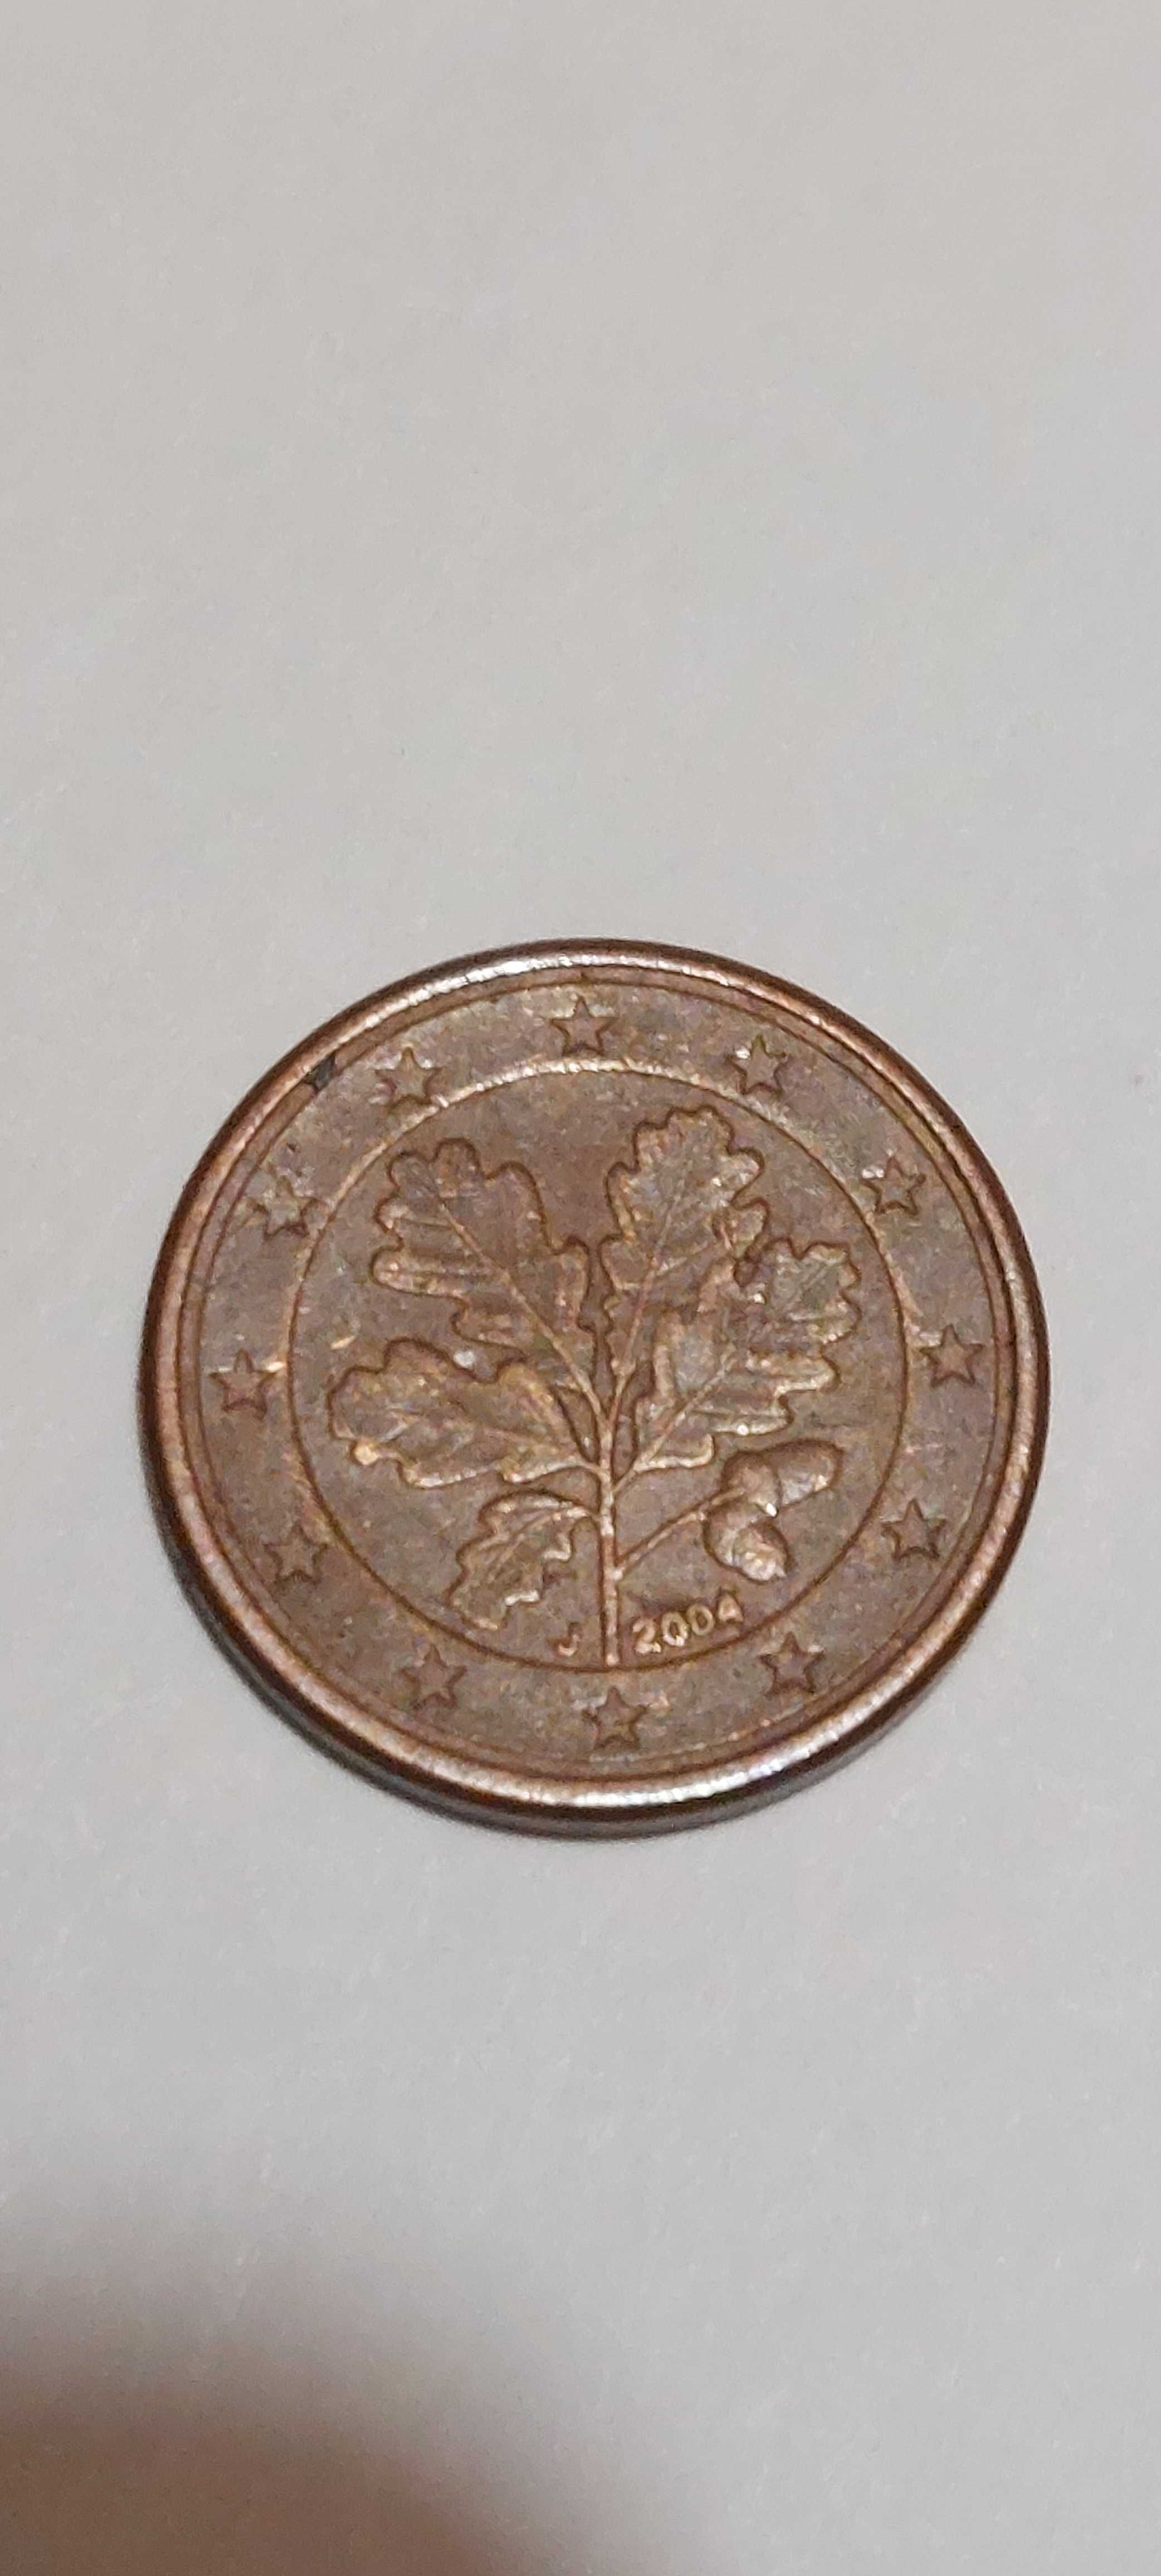 Vendo Moeda rara 0,01 cêntimos Alemanha J 2004